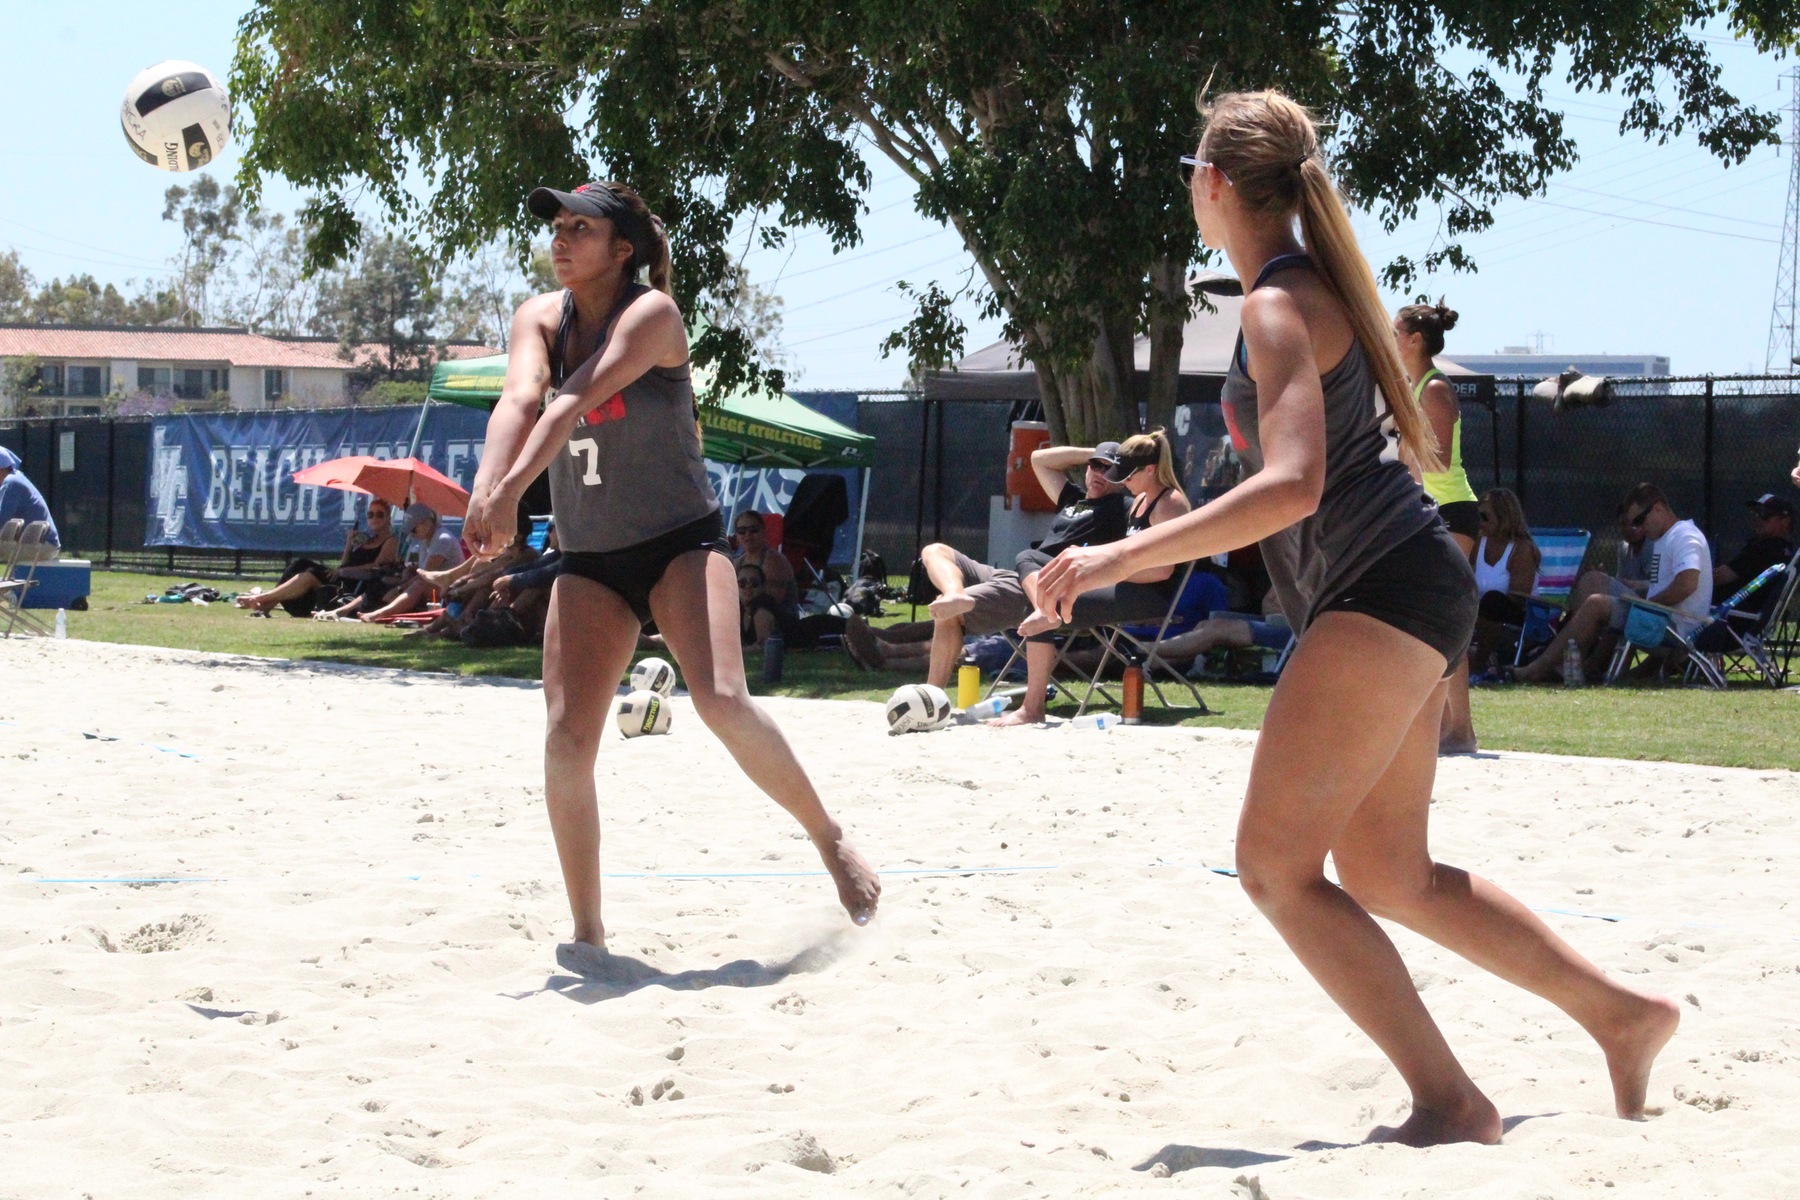 Serrano and Taylor Fall Short at Beach State Championships